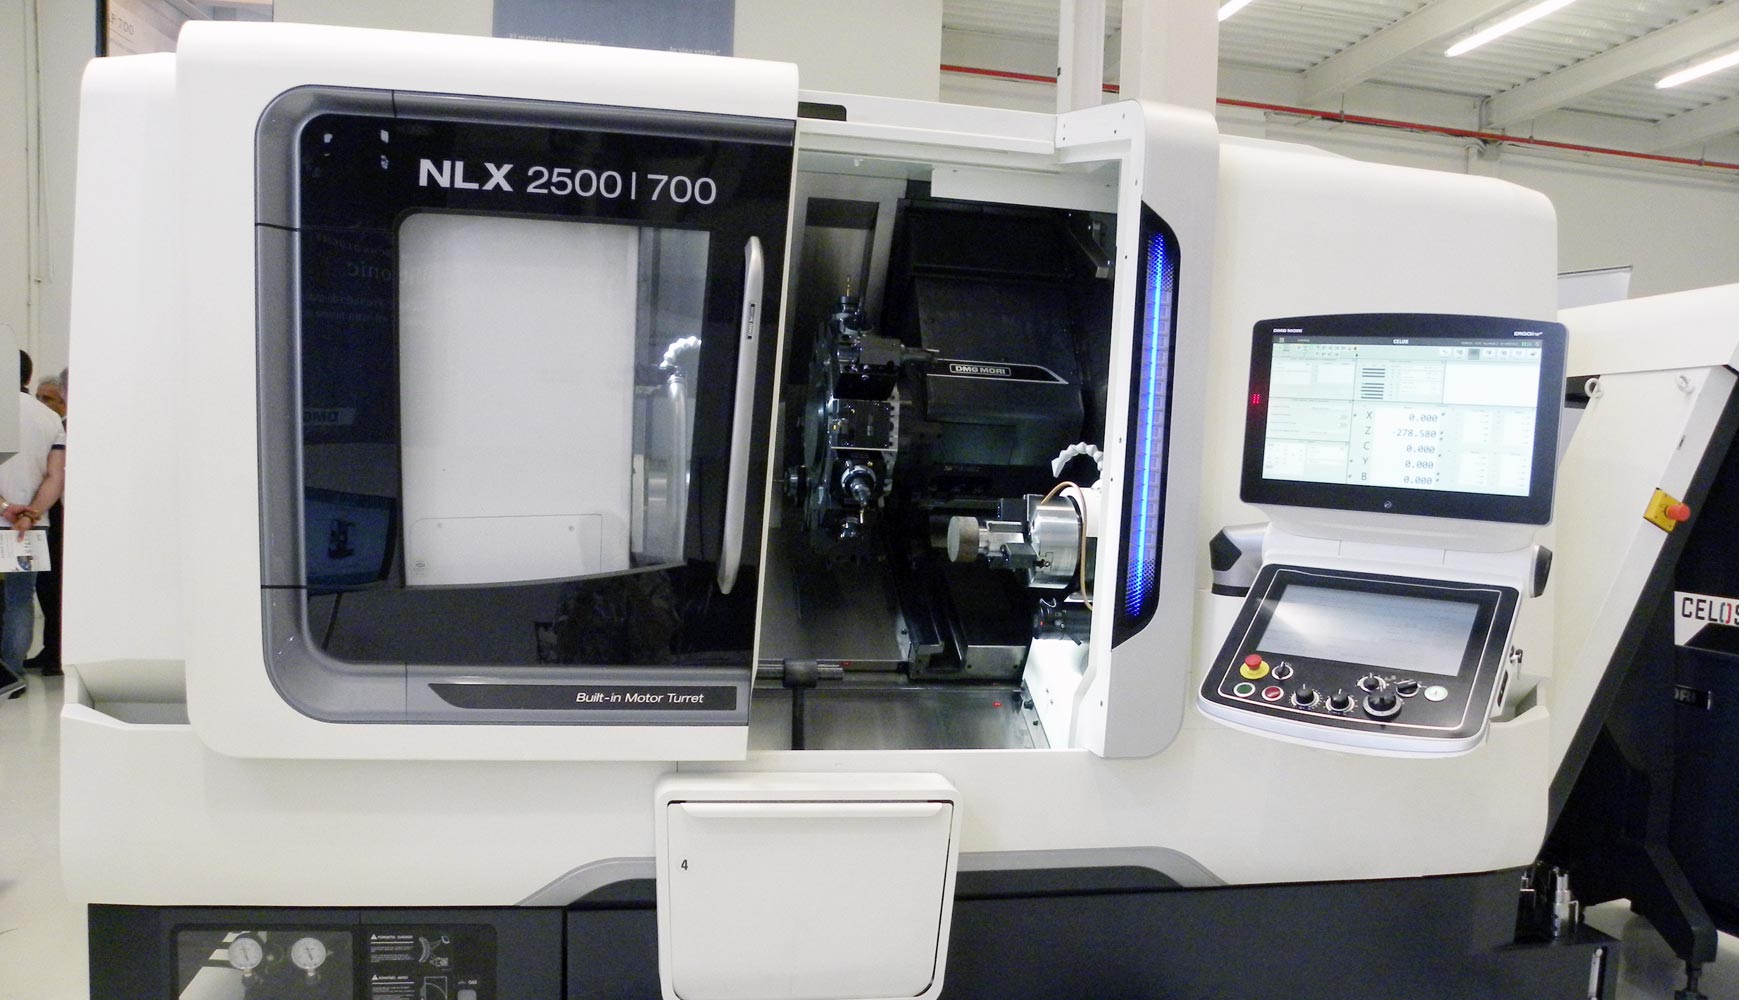 El nuevo diseo del torno NLX 2500SY /700 garantiza unas ergonmicas condiciones de trabajo y simplifica los procesos de torneado gracias al sistema...